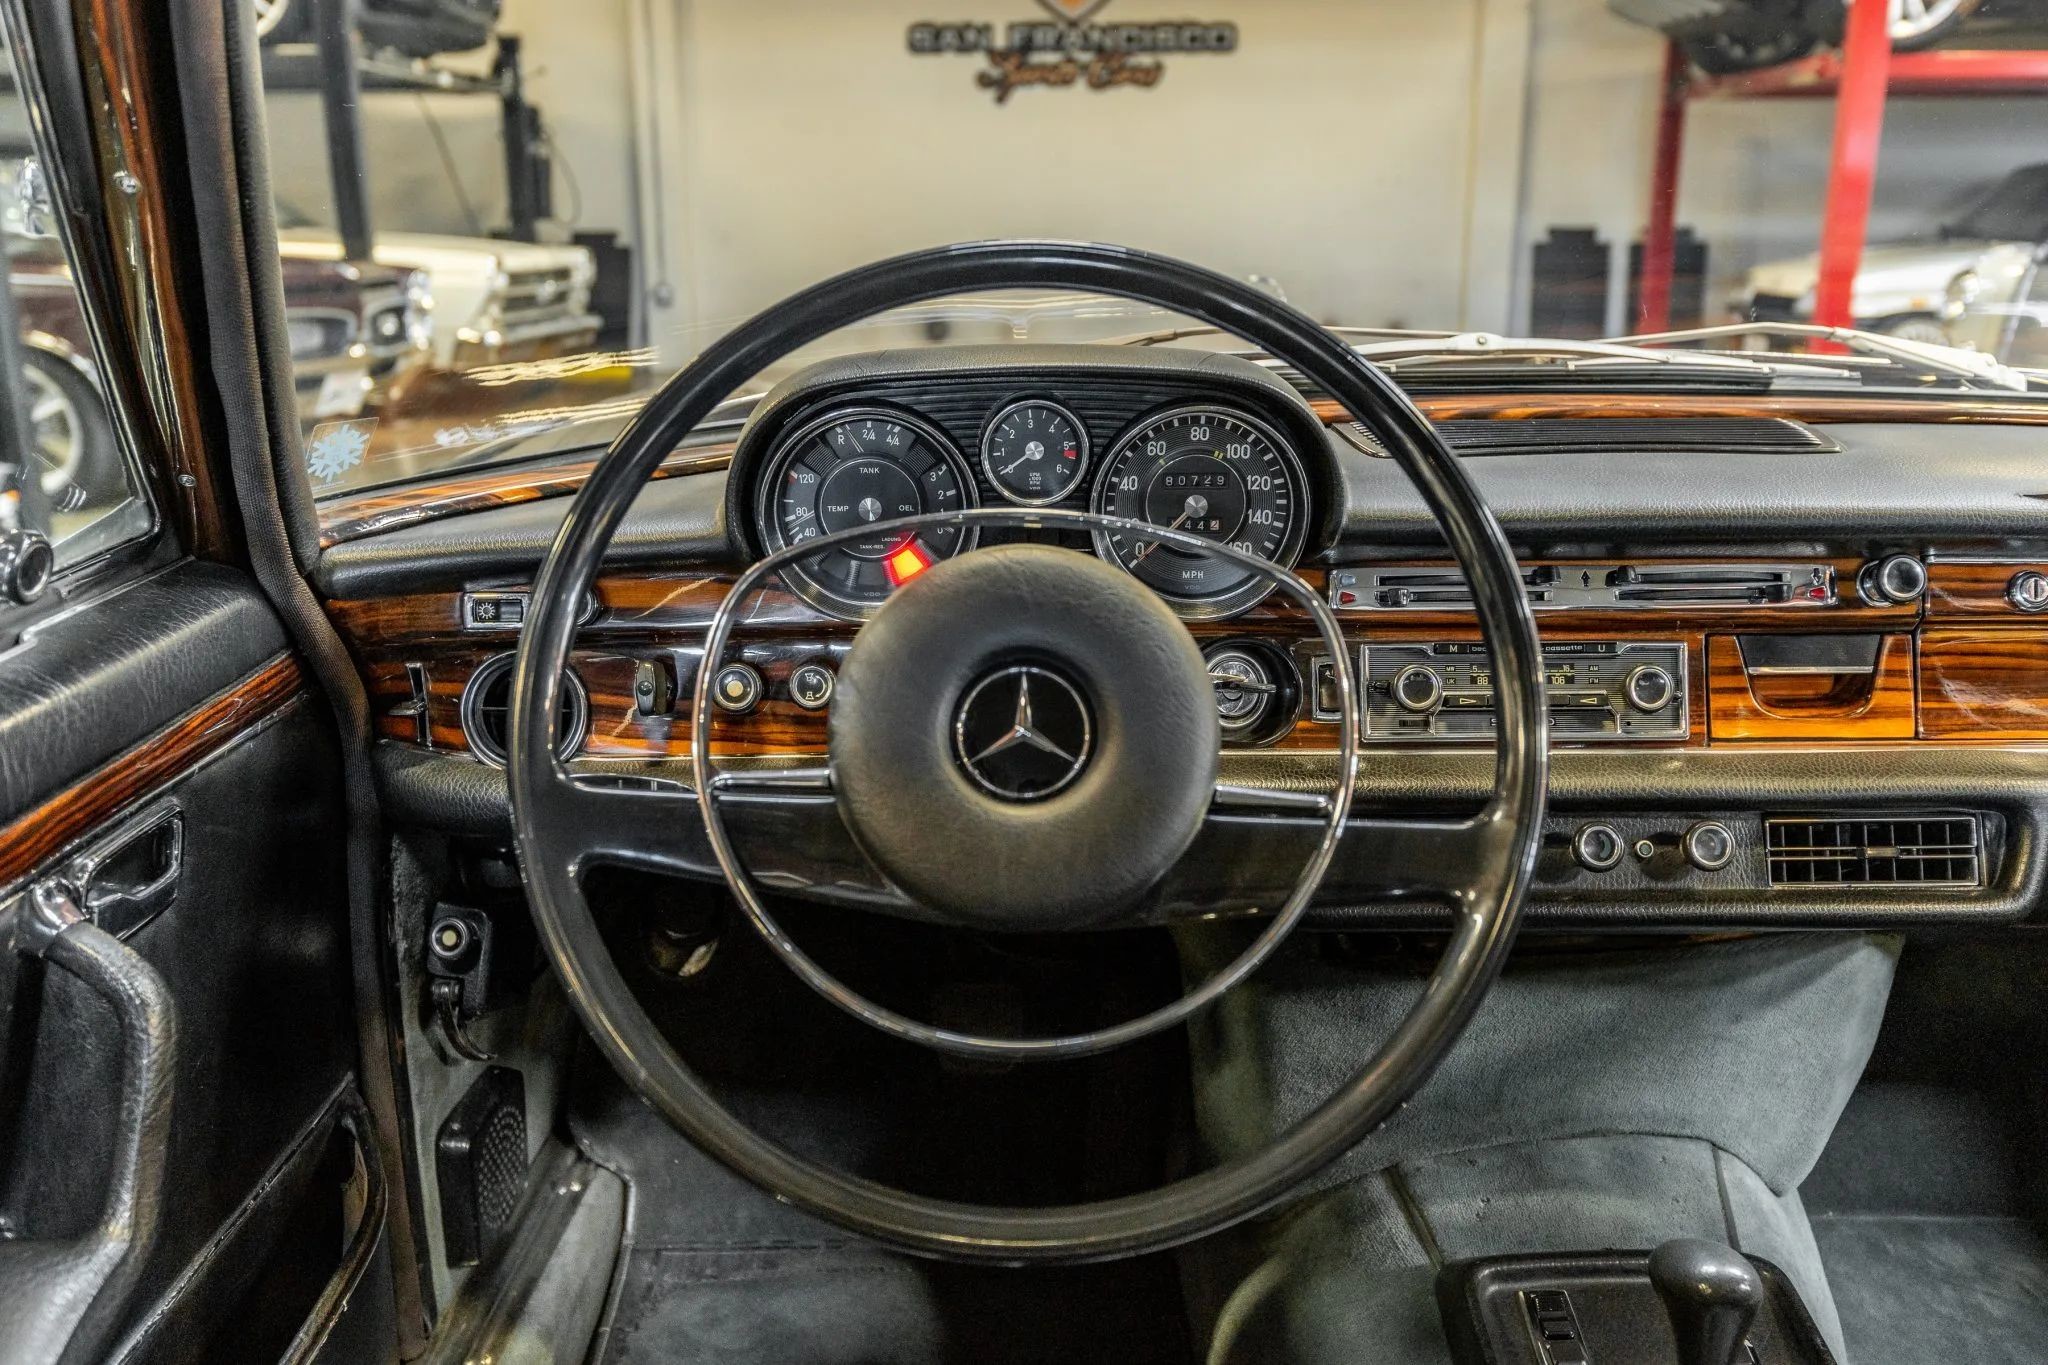 Mercedes-Benz 300 SEL 6.3 Стива МакКуина 1972 года